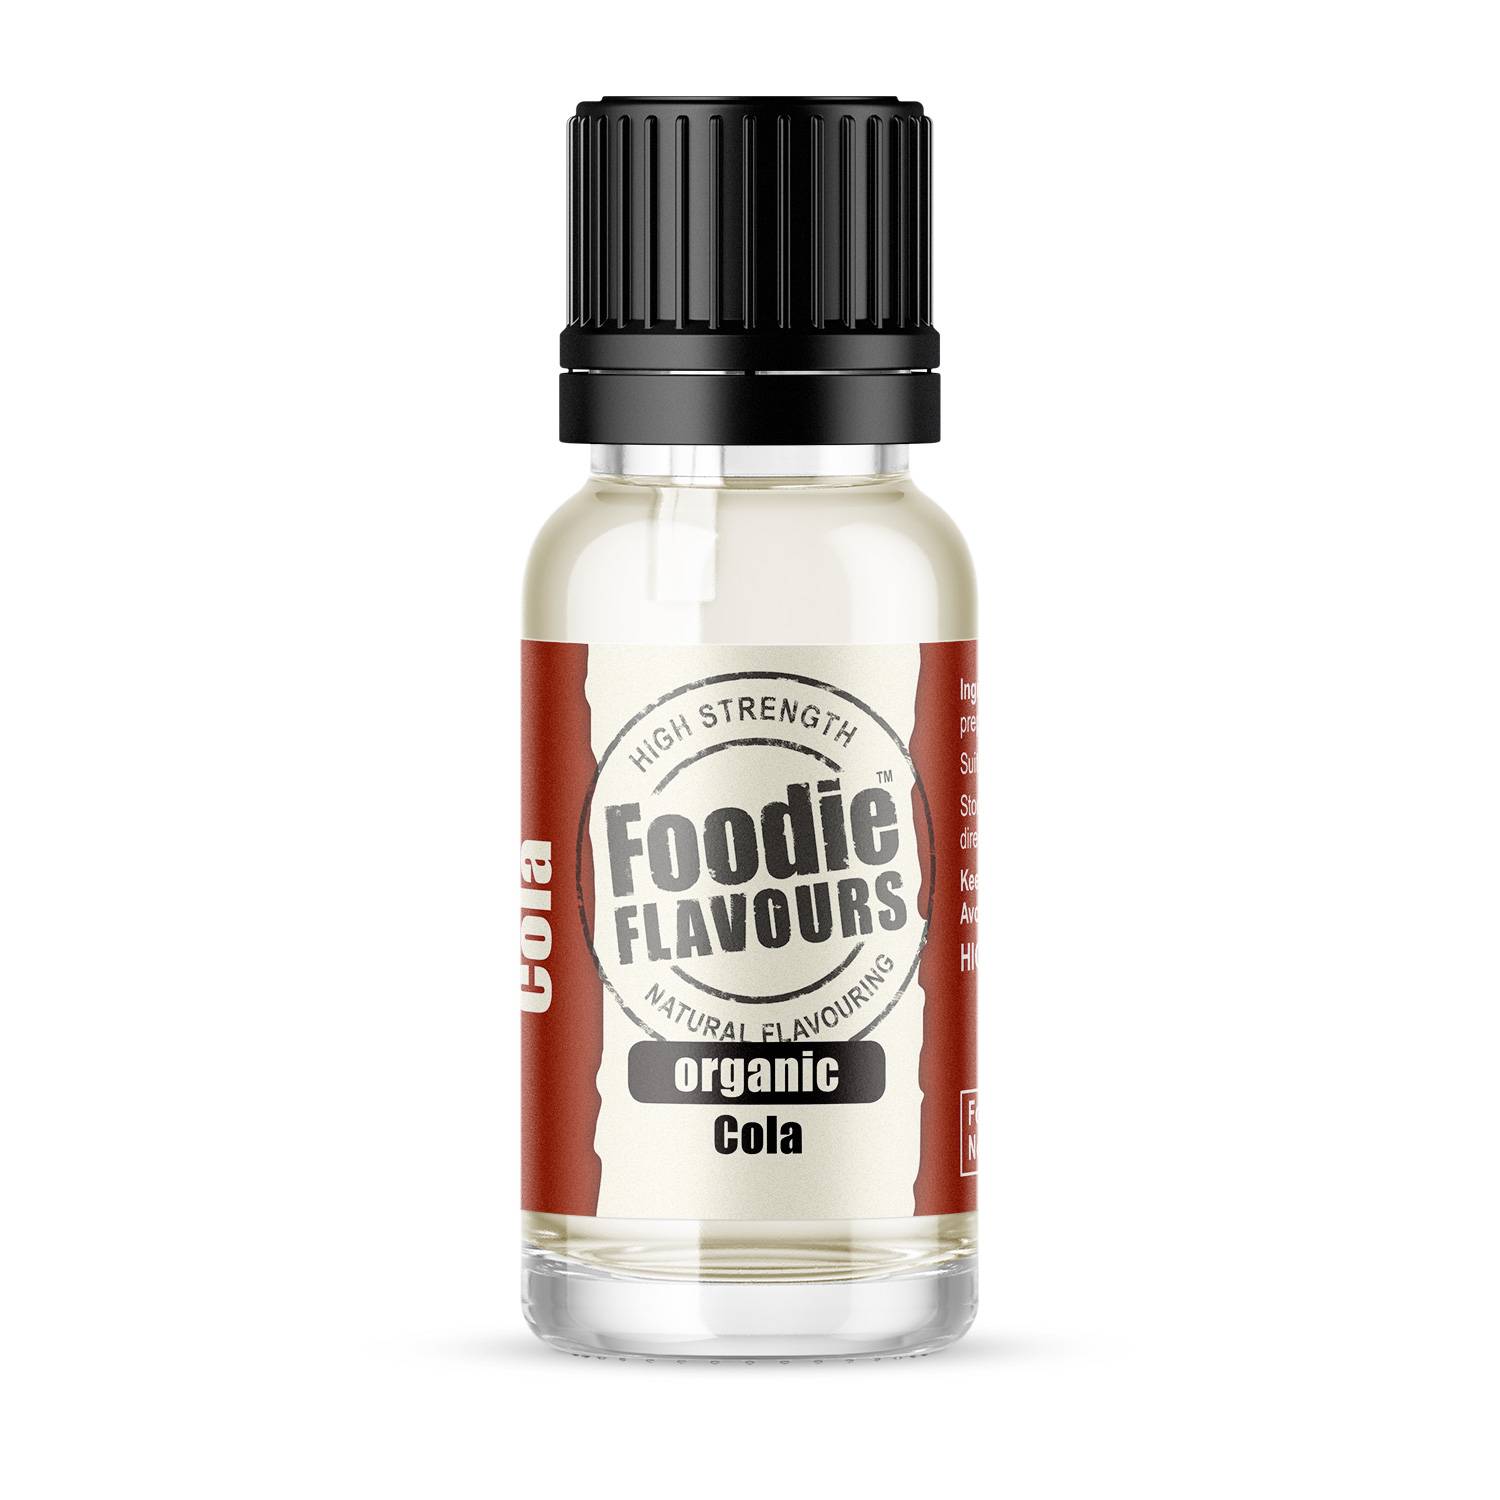 Přírodní koncentrované aroma 15ml cola Foodie Flavours